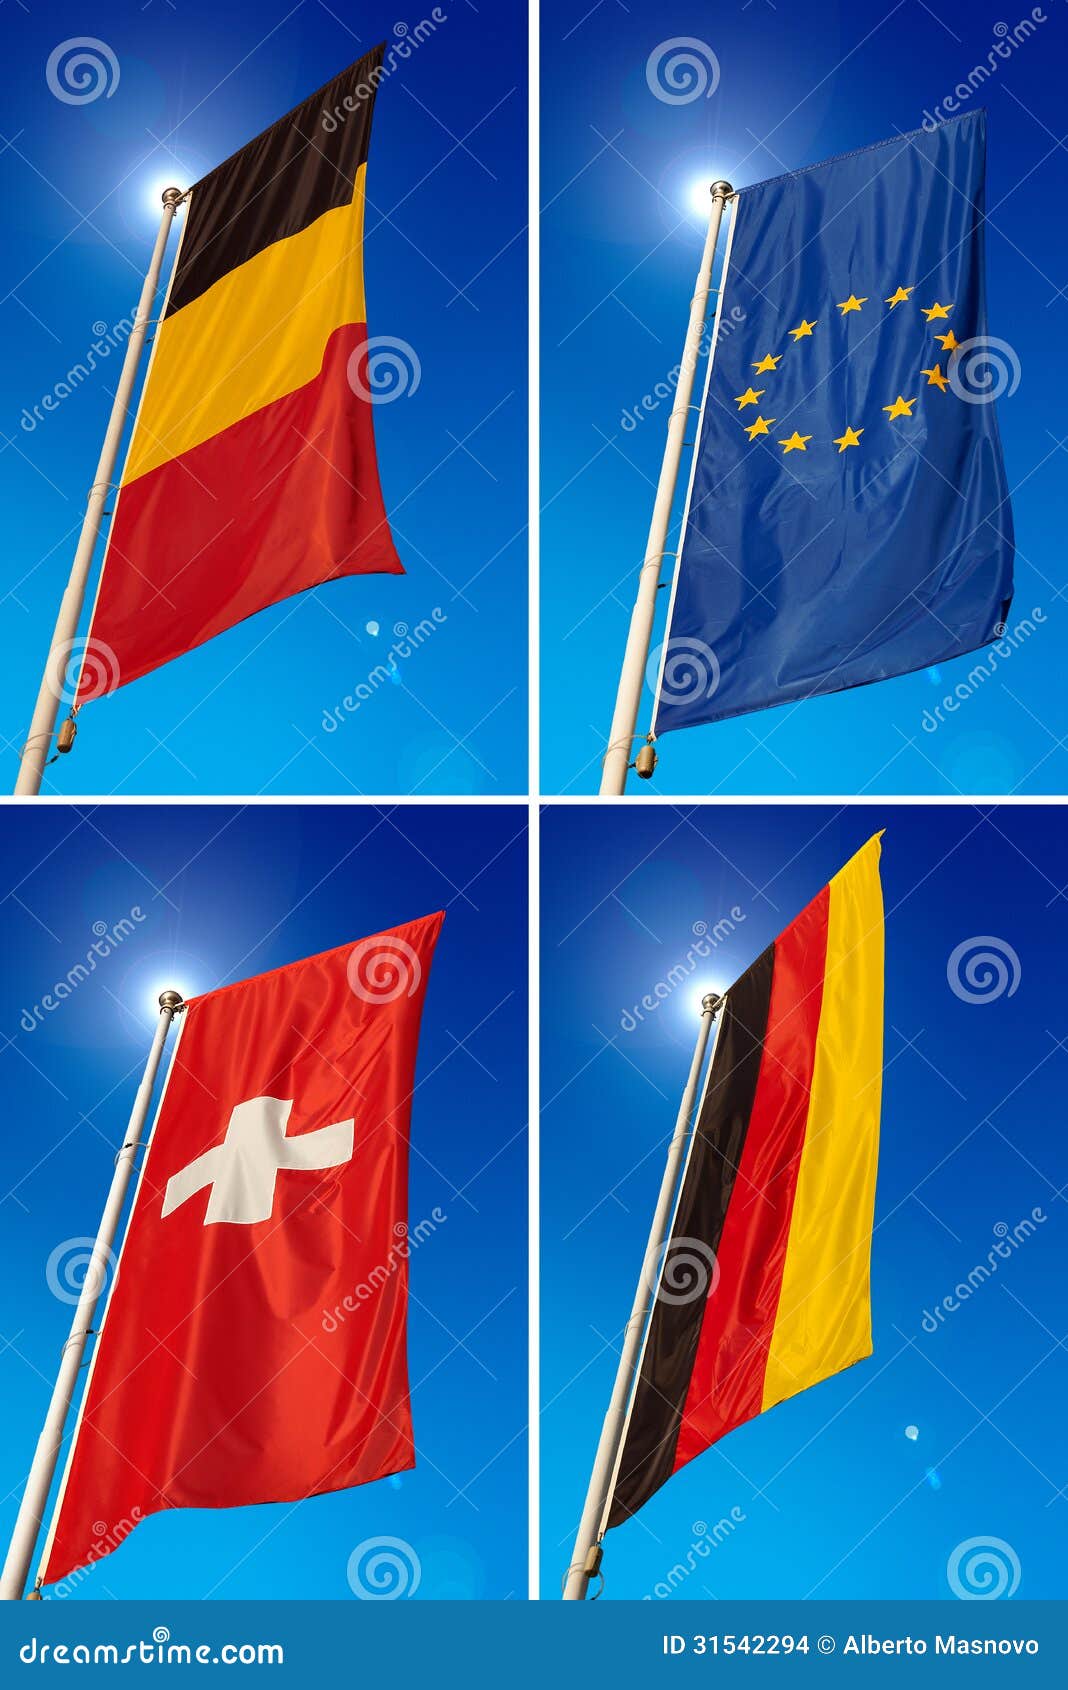 флаг бельгии и германии сравнить фото